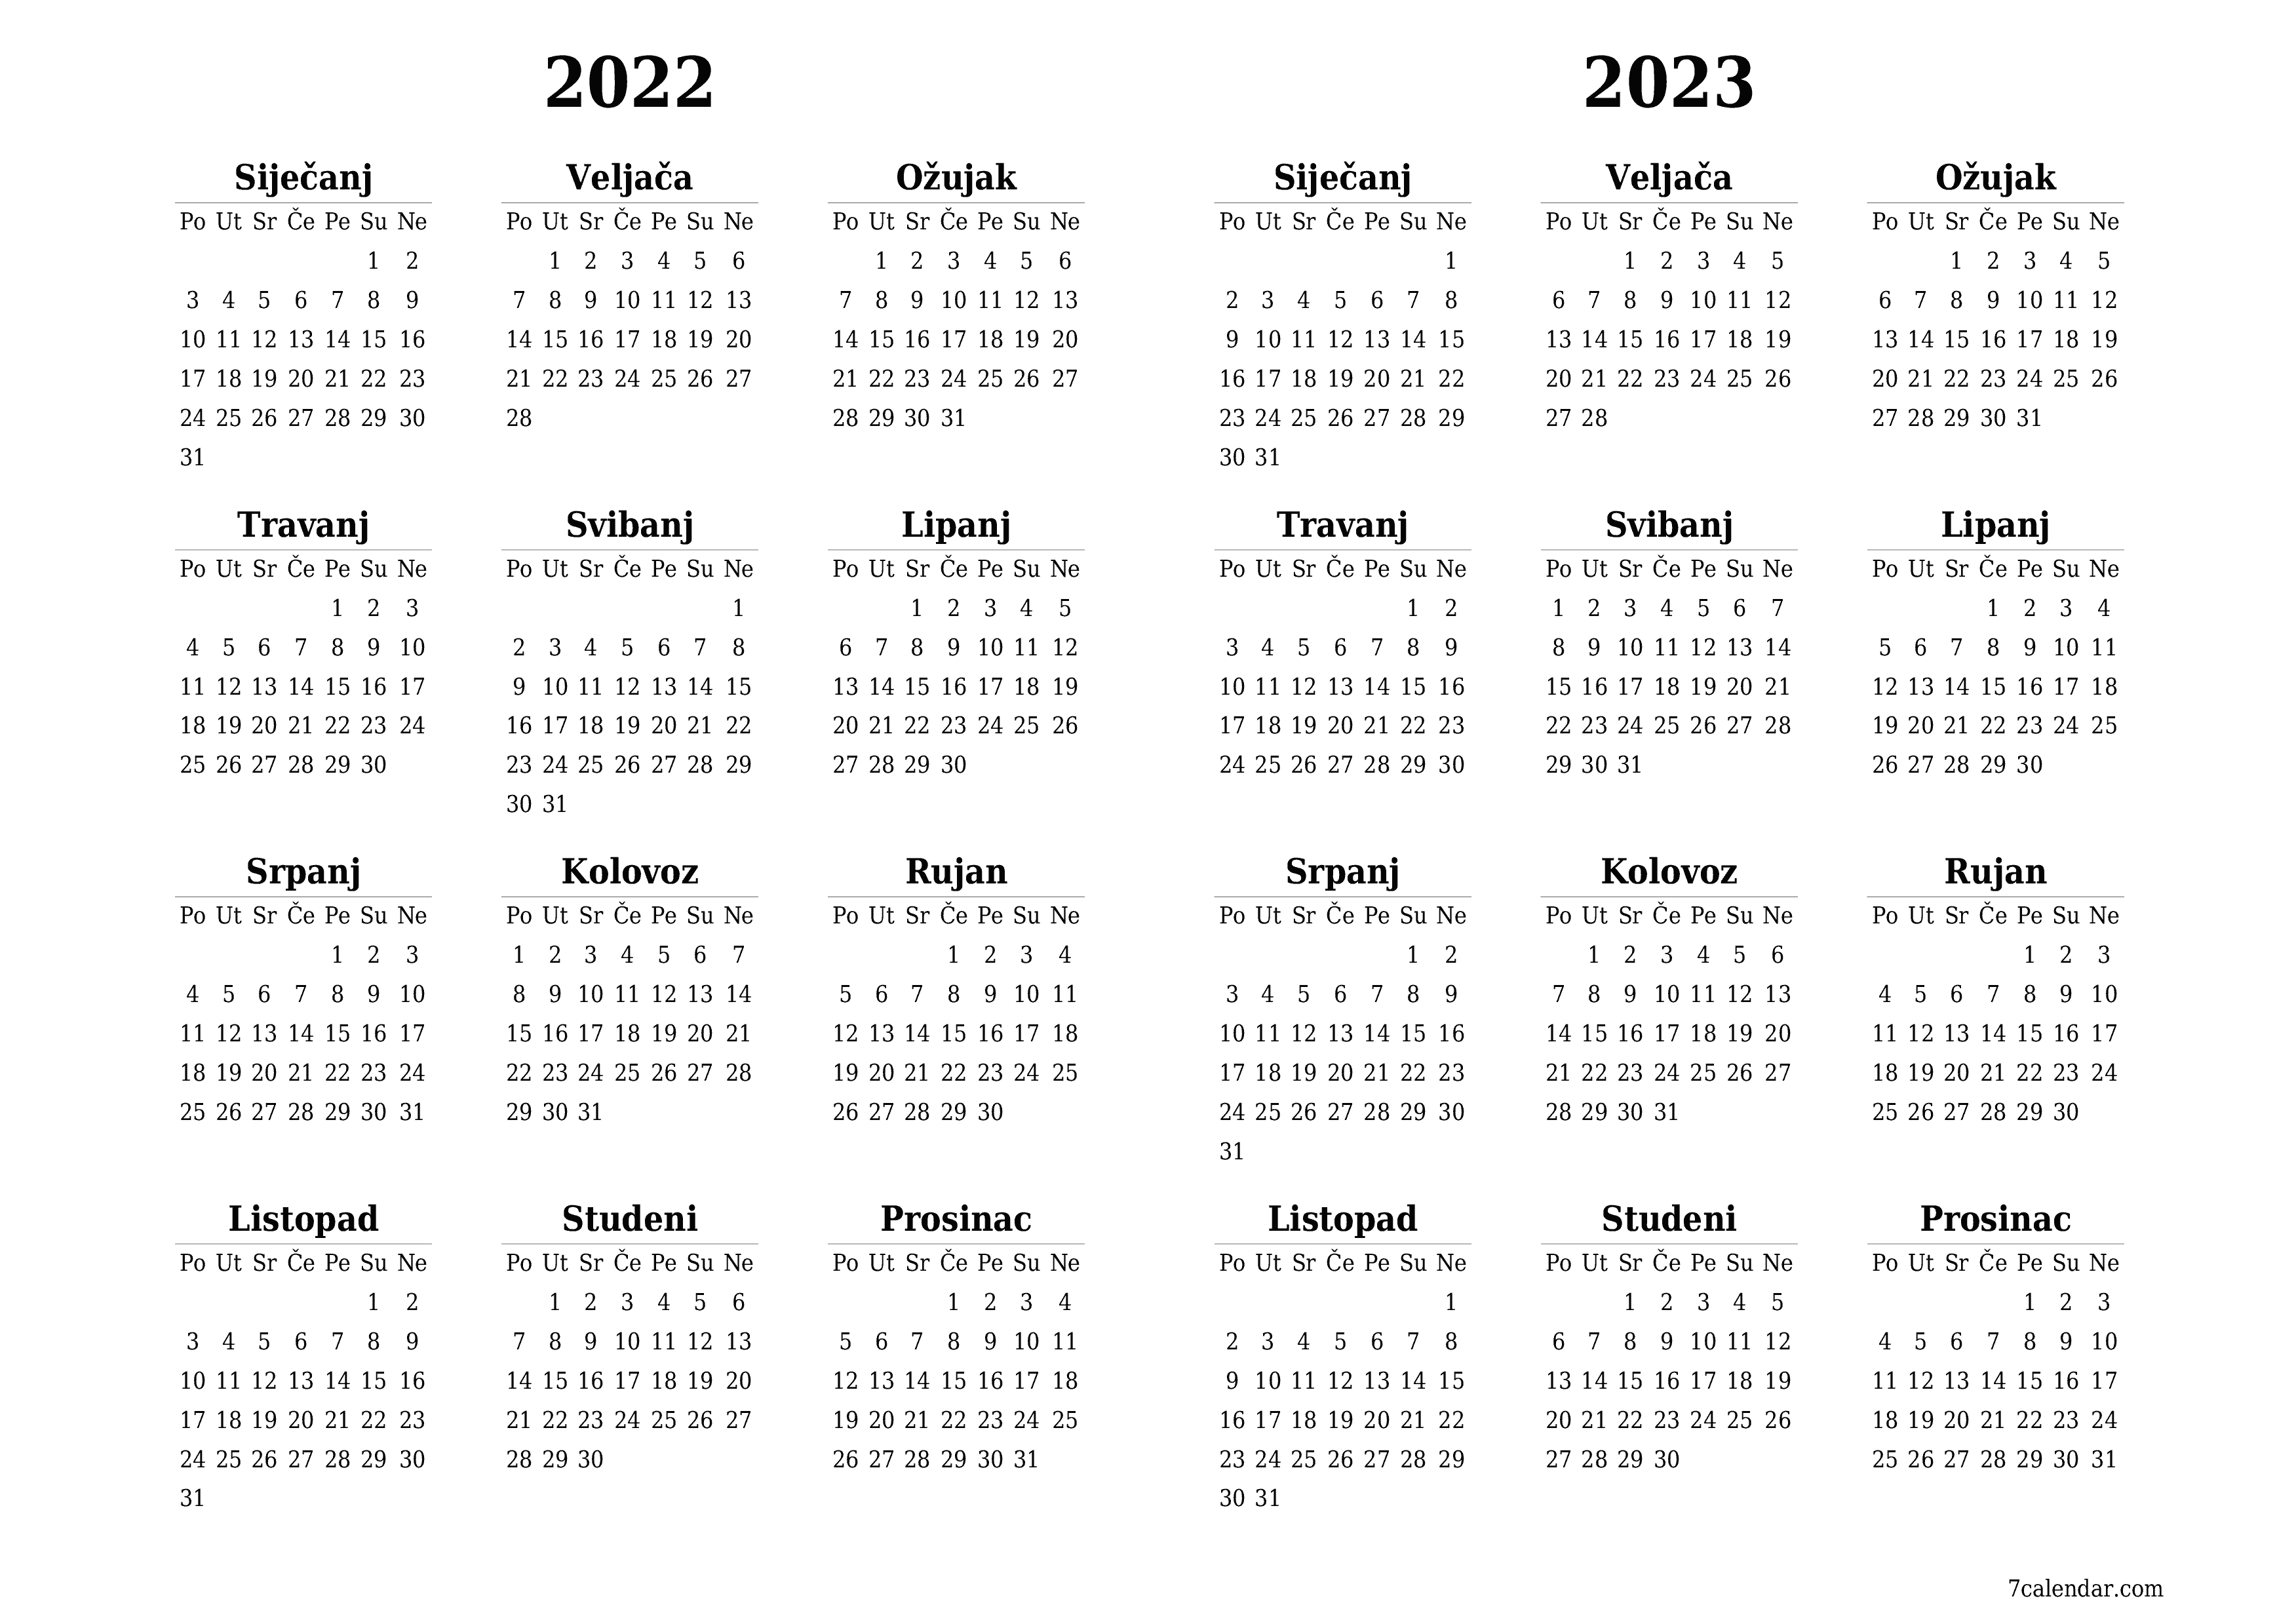  za ispis zidni predložak a besplatni horizontalno Godišnje kalendar Prosinac (Pro) 2022